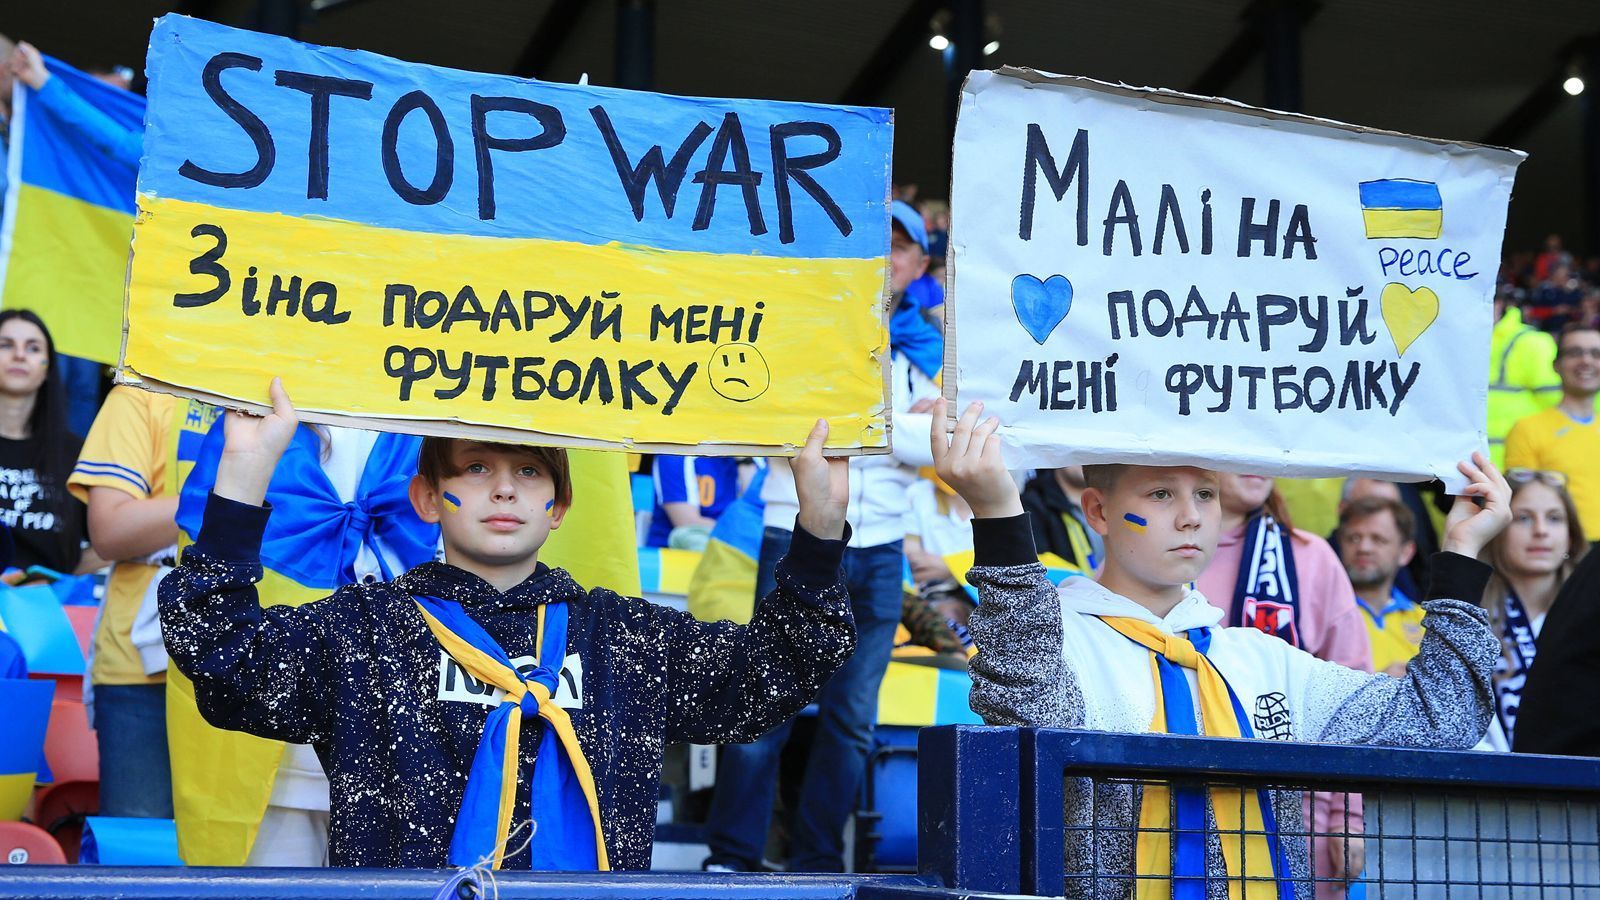 
                <strong>Stop War</strong><br>
                Die Botschaft "Stop War" (Stoppt den Krieg) stand im Hampden Park im Mittelpunkt und war auf zahlreichen Transparenten zu lesen. Seit russische Truppen im Februar 2022 in der Ukraine einmarschierten, mussten Millionen Menschen flüchten.
              